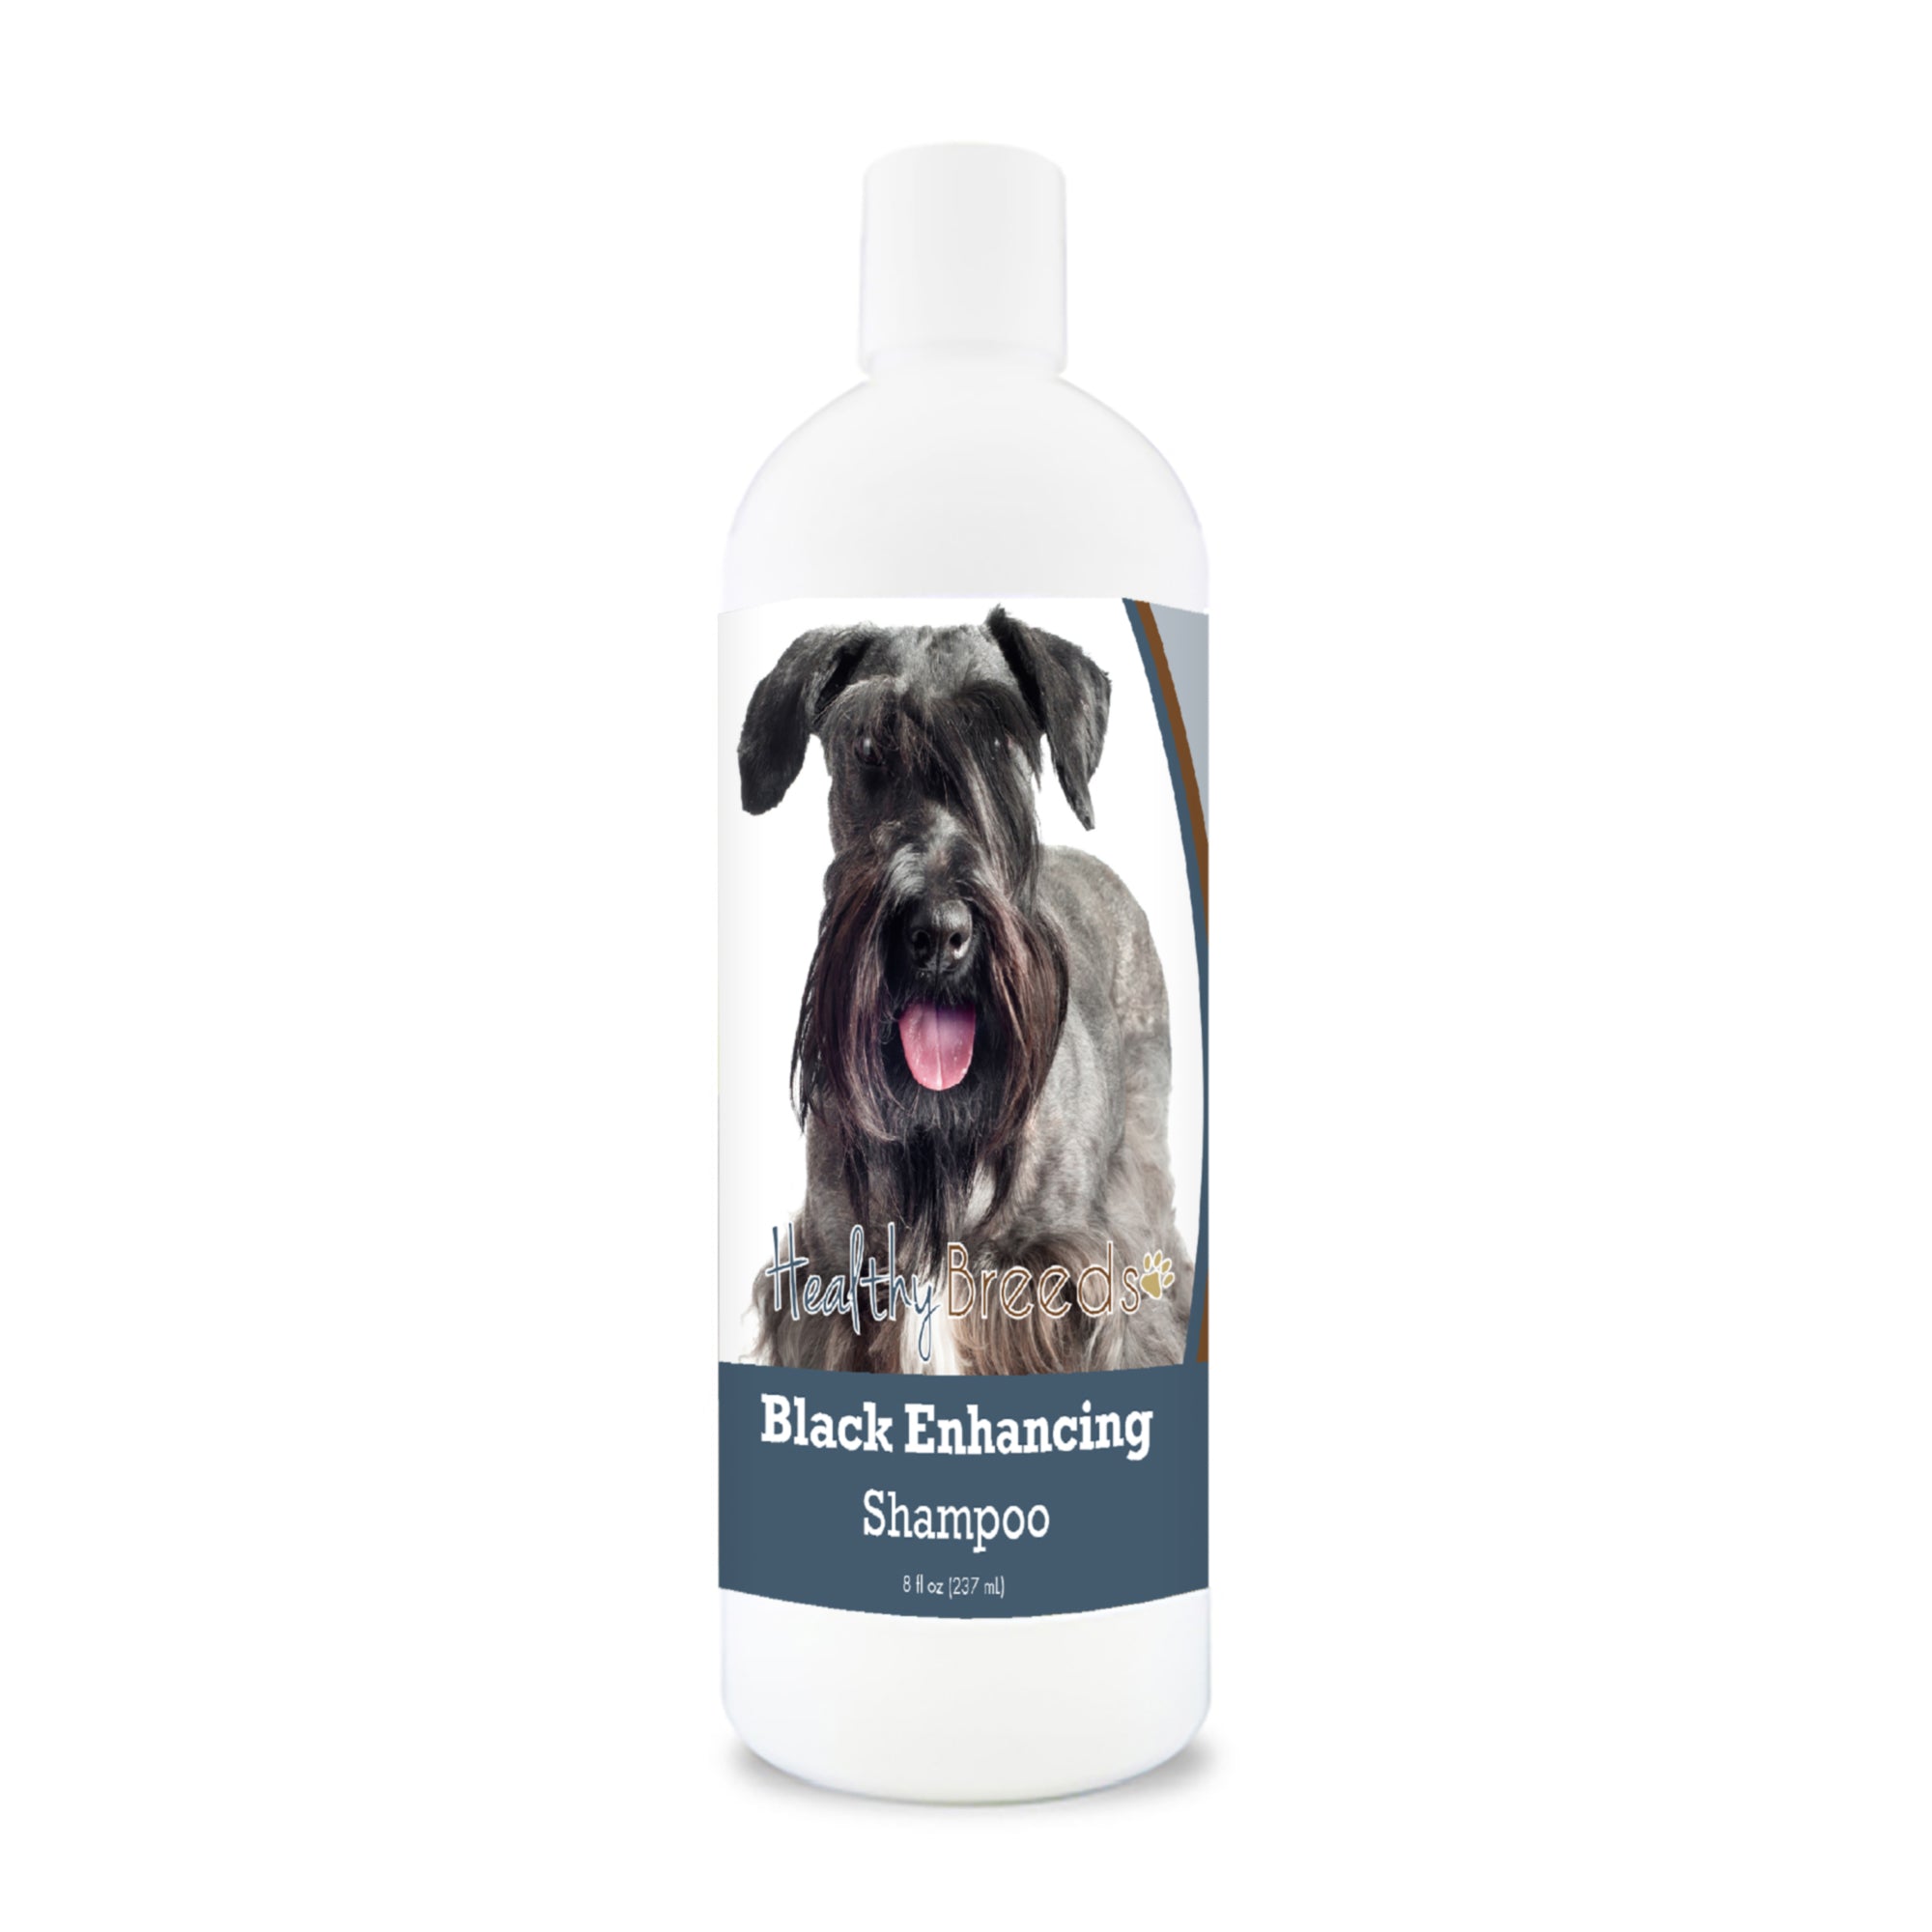 Cesky Terrier Black Enhancing Shampoo 8 oz